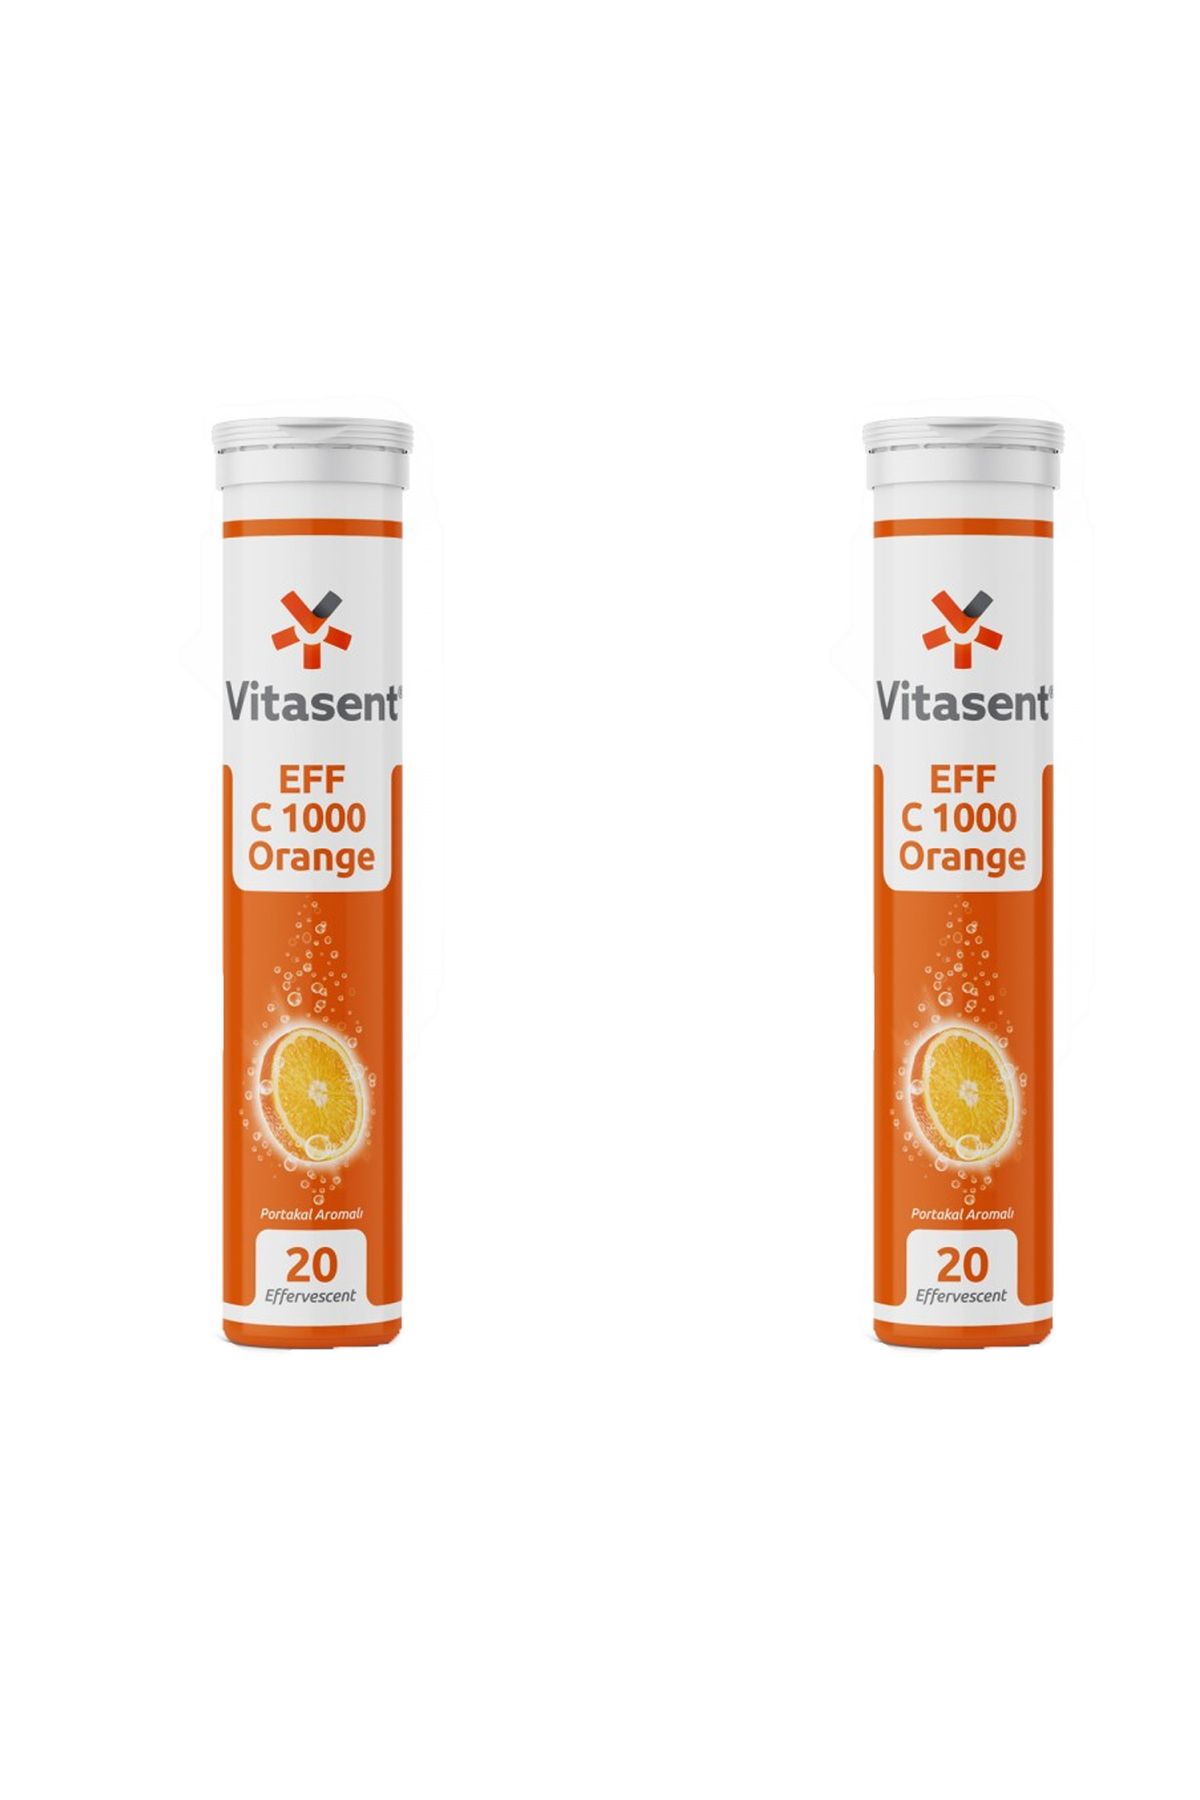 VİTASENT Vitasent Vitamin C 1000 20 Efervesan Tablet 2 Adet